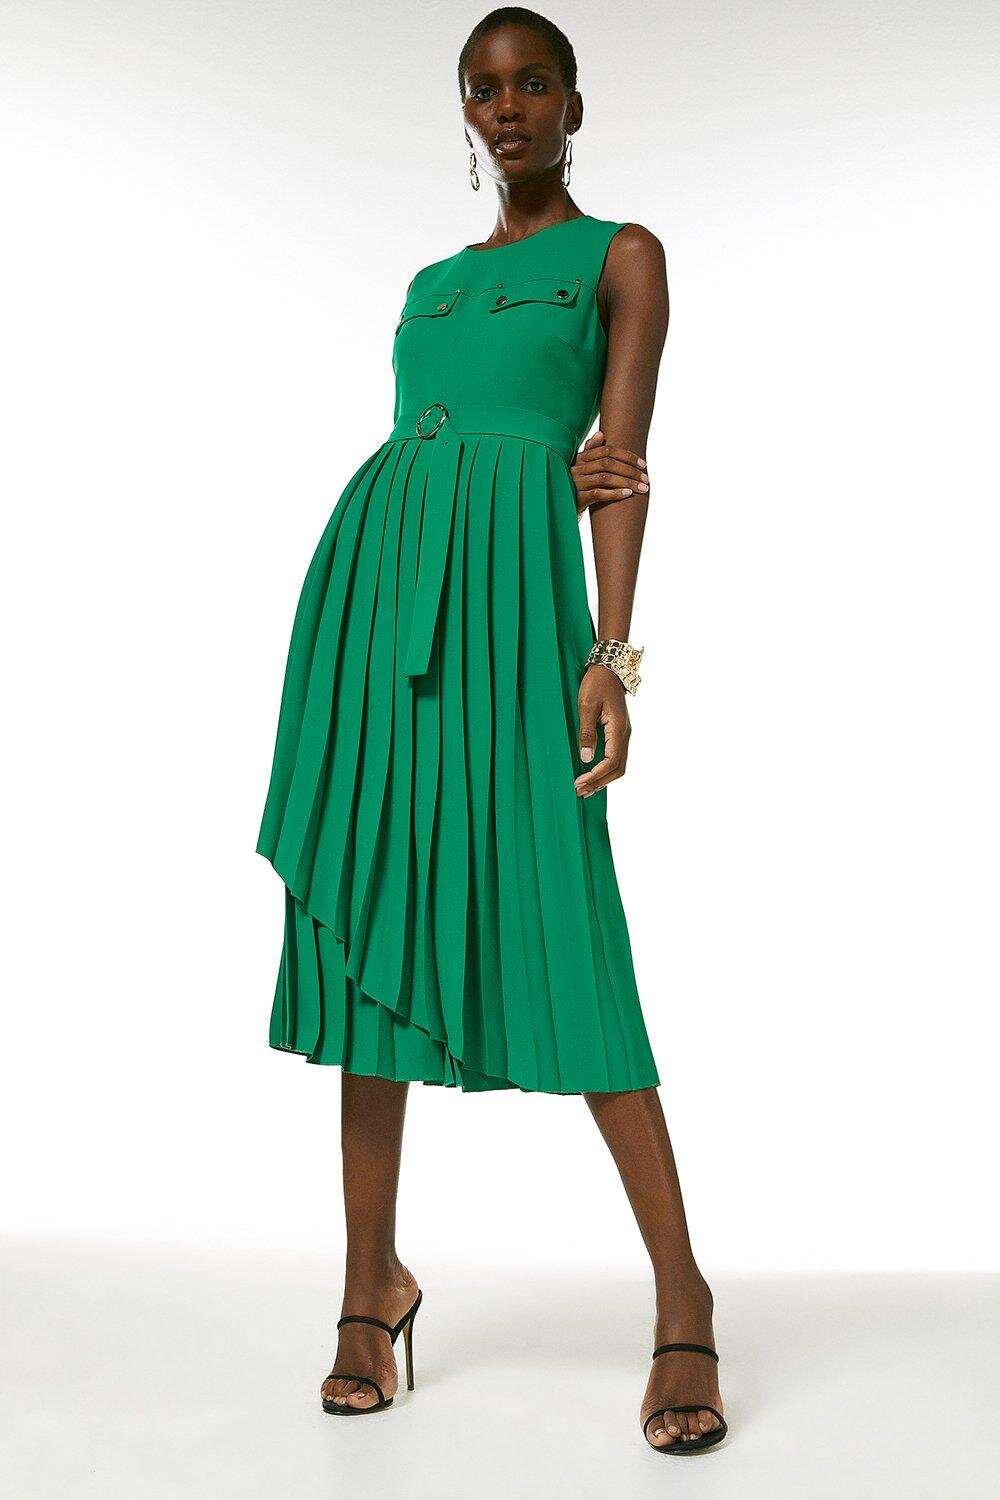 KM Green Dress.jpg